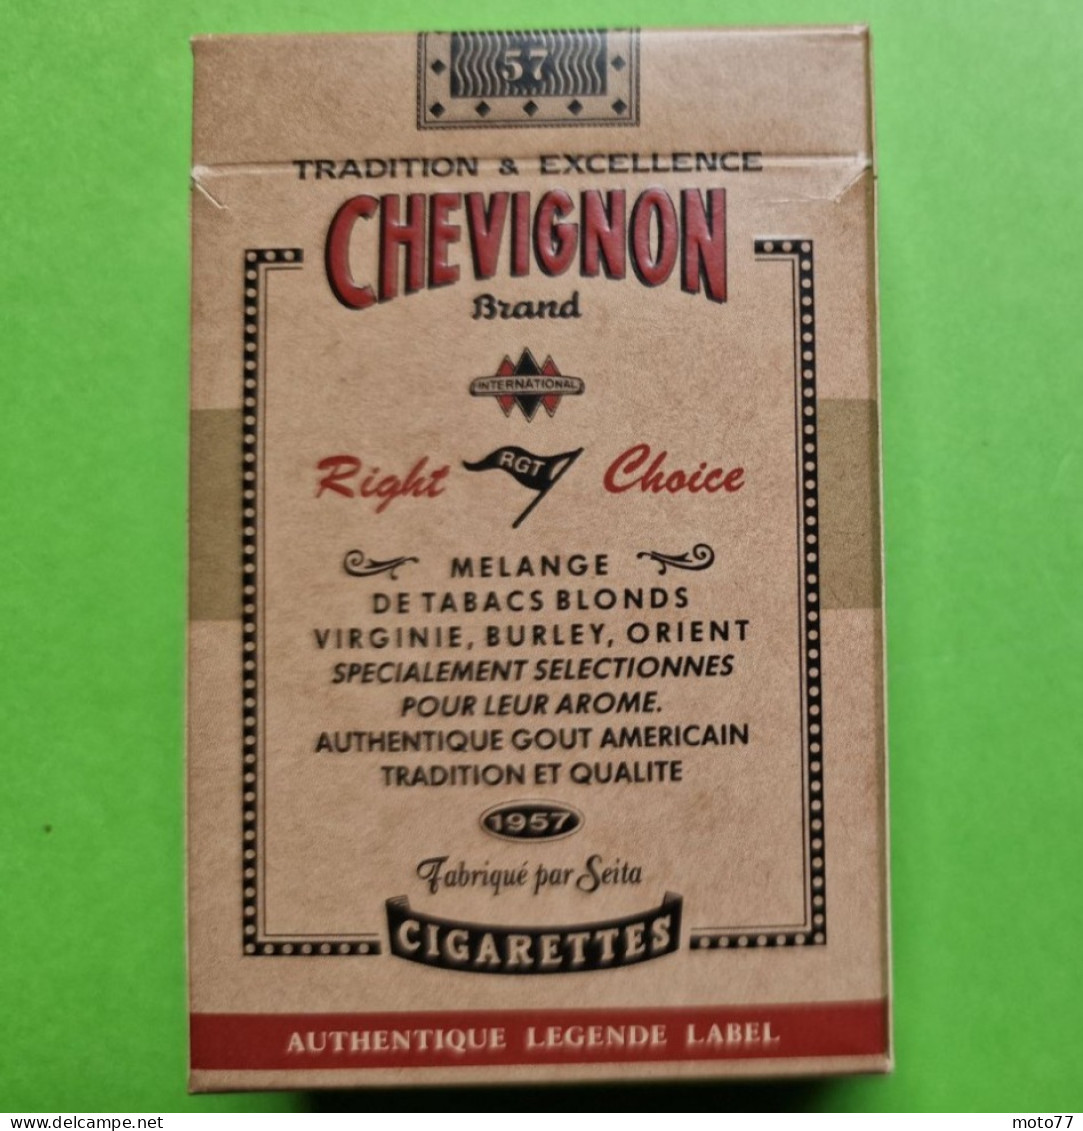 Ancien PAQUET De CIGARETTES Vide - CHEVIGNON - Avion - Vers 1980 - Etuis à Cigarettes Vides